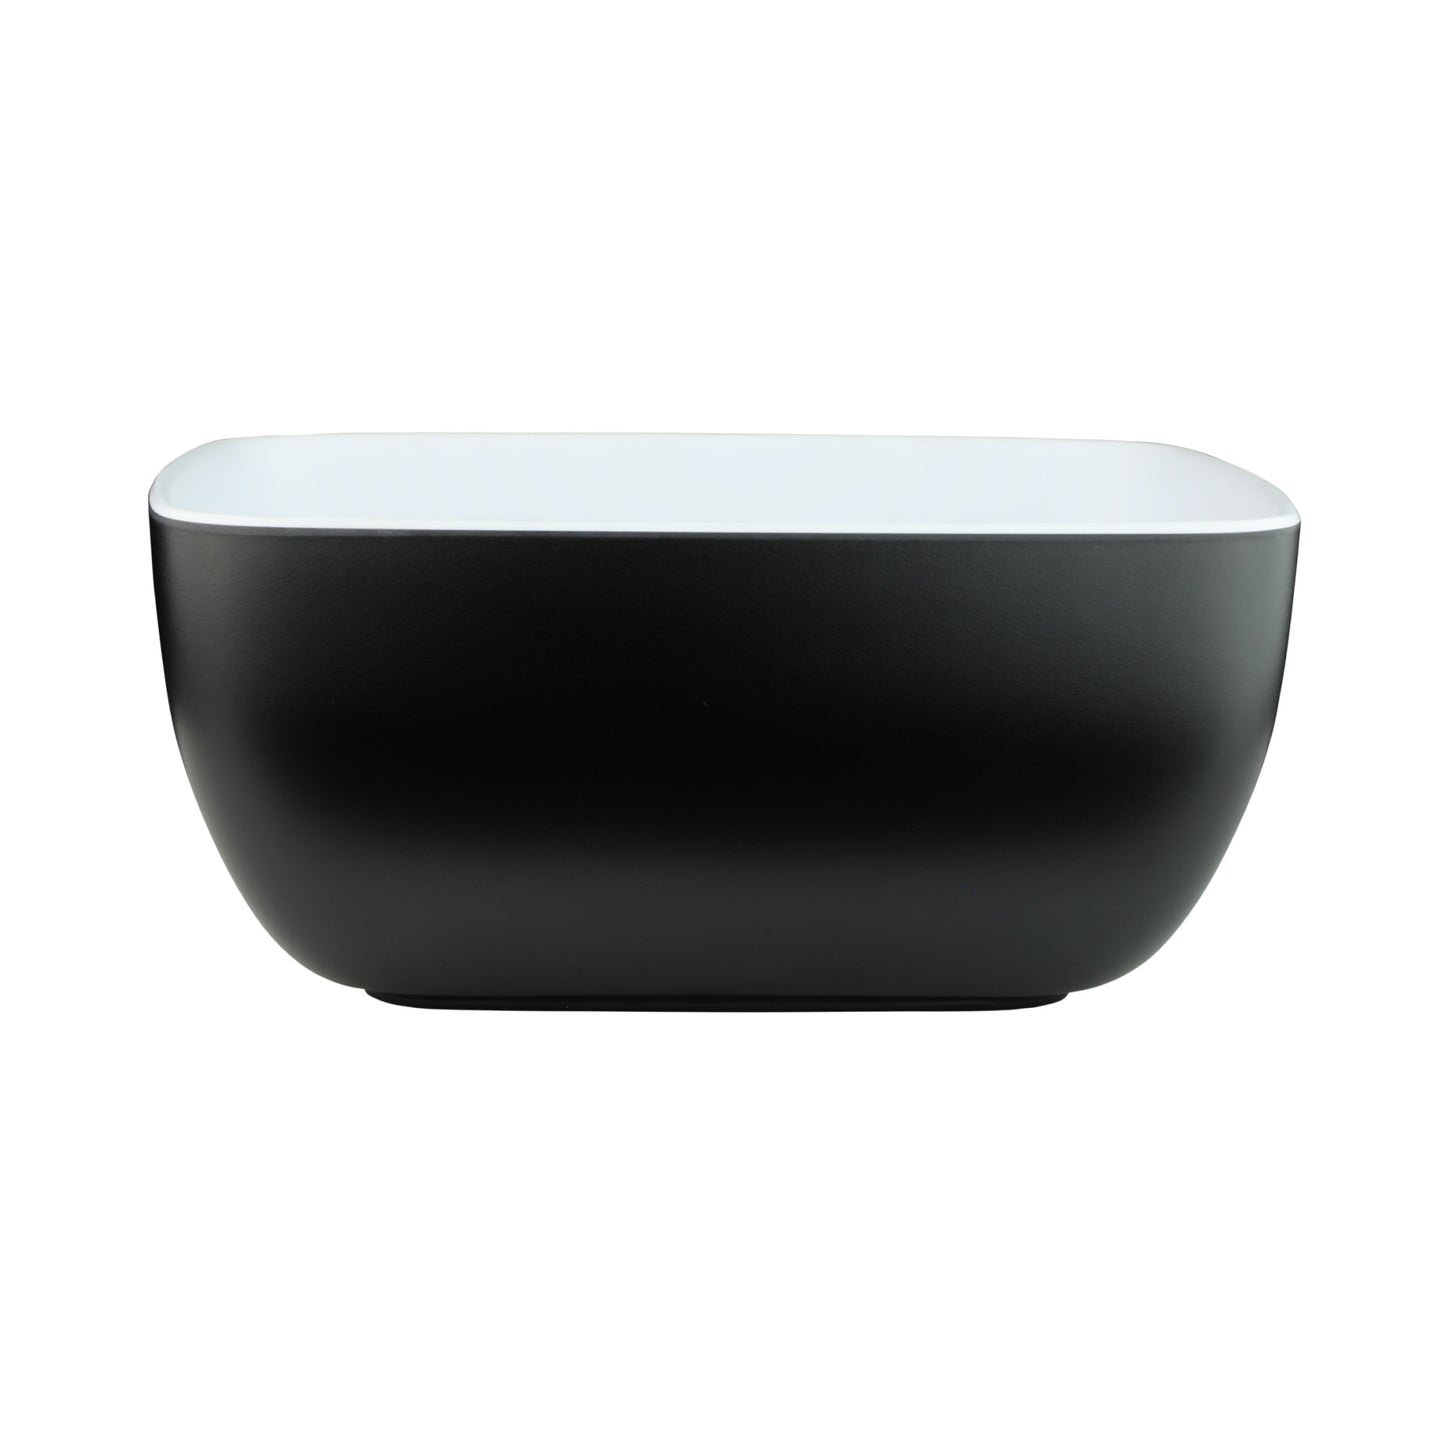 Melamine Rectangular Bowl - White Inside, Black Outside